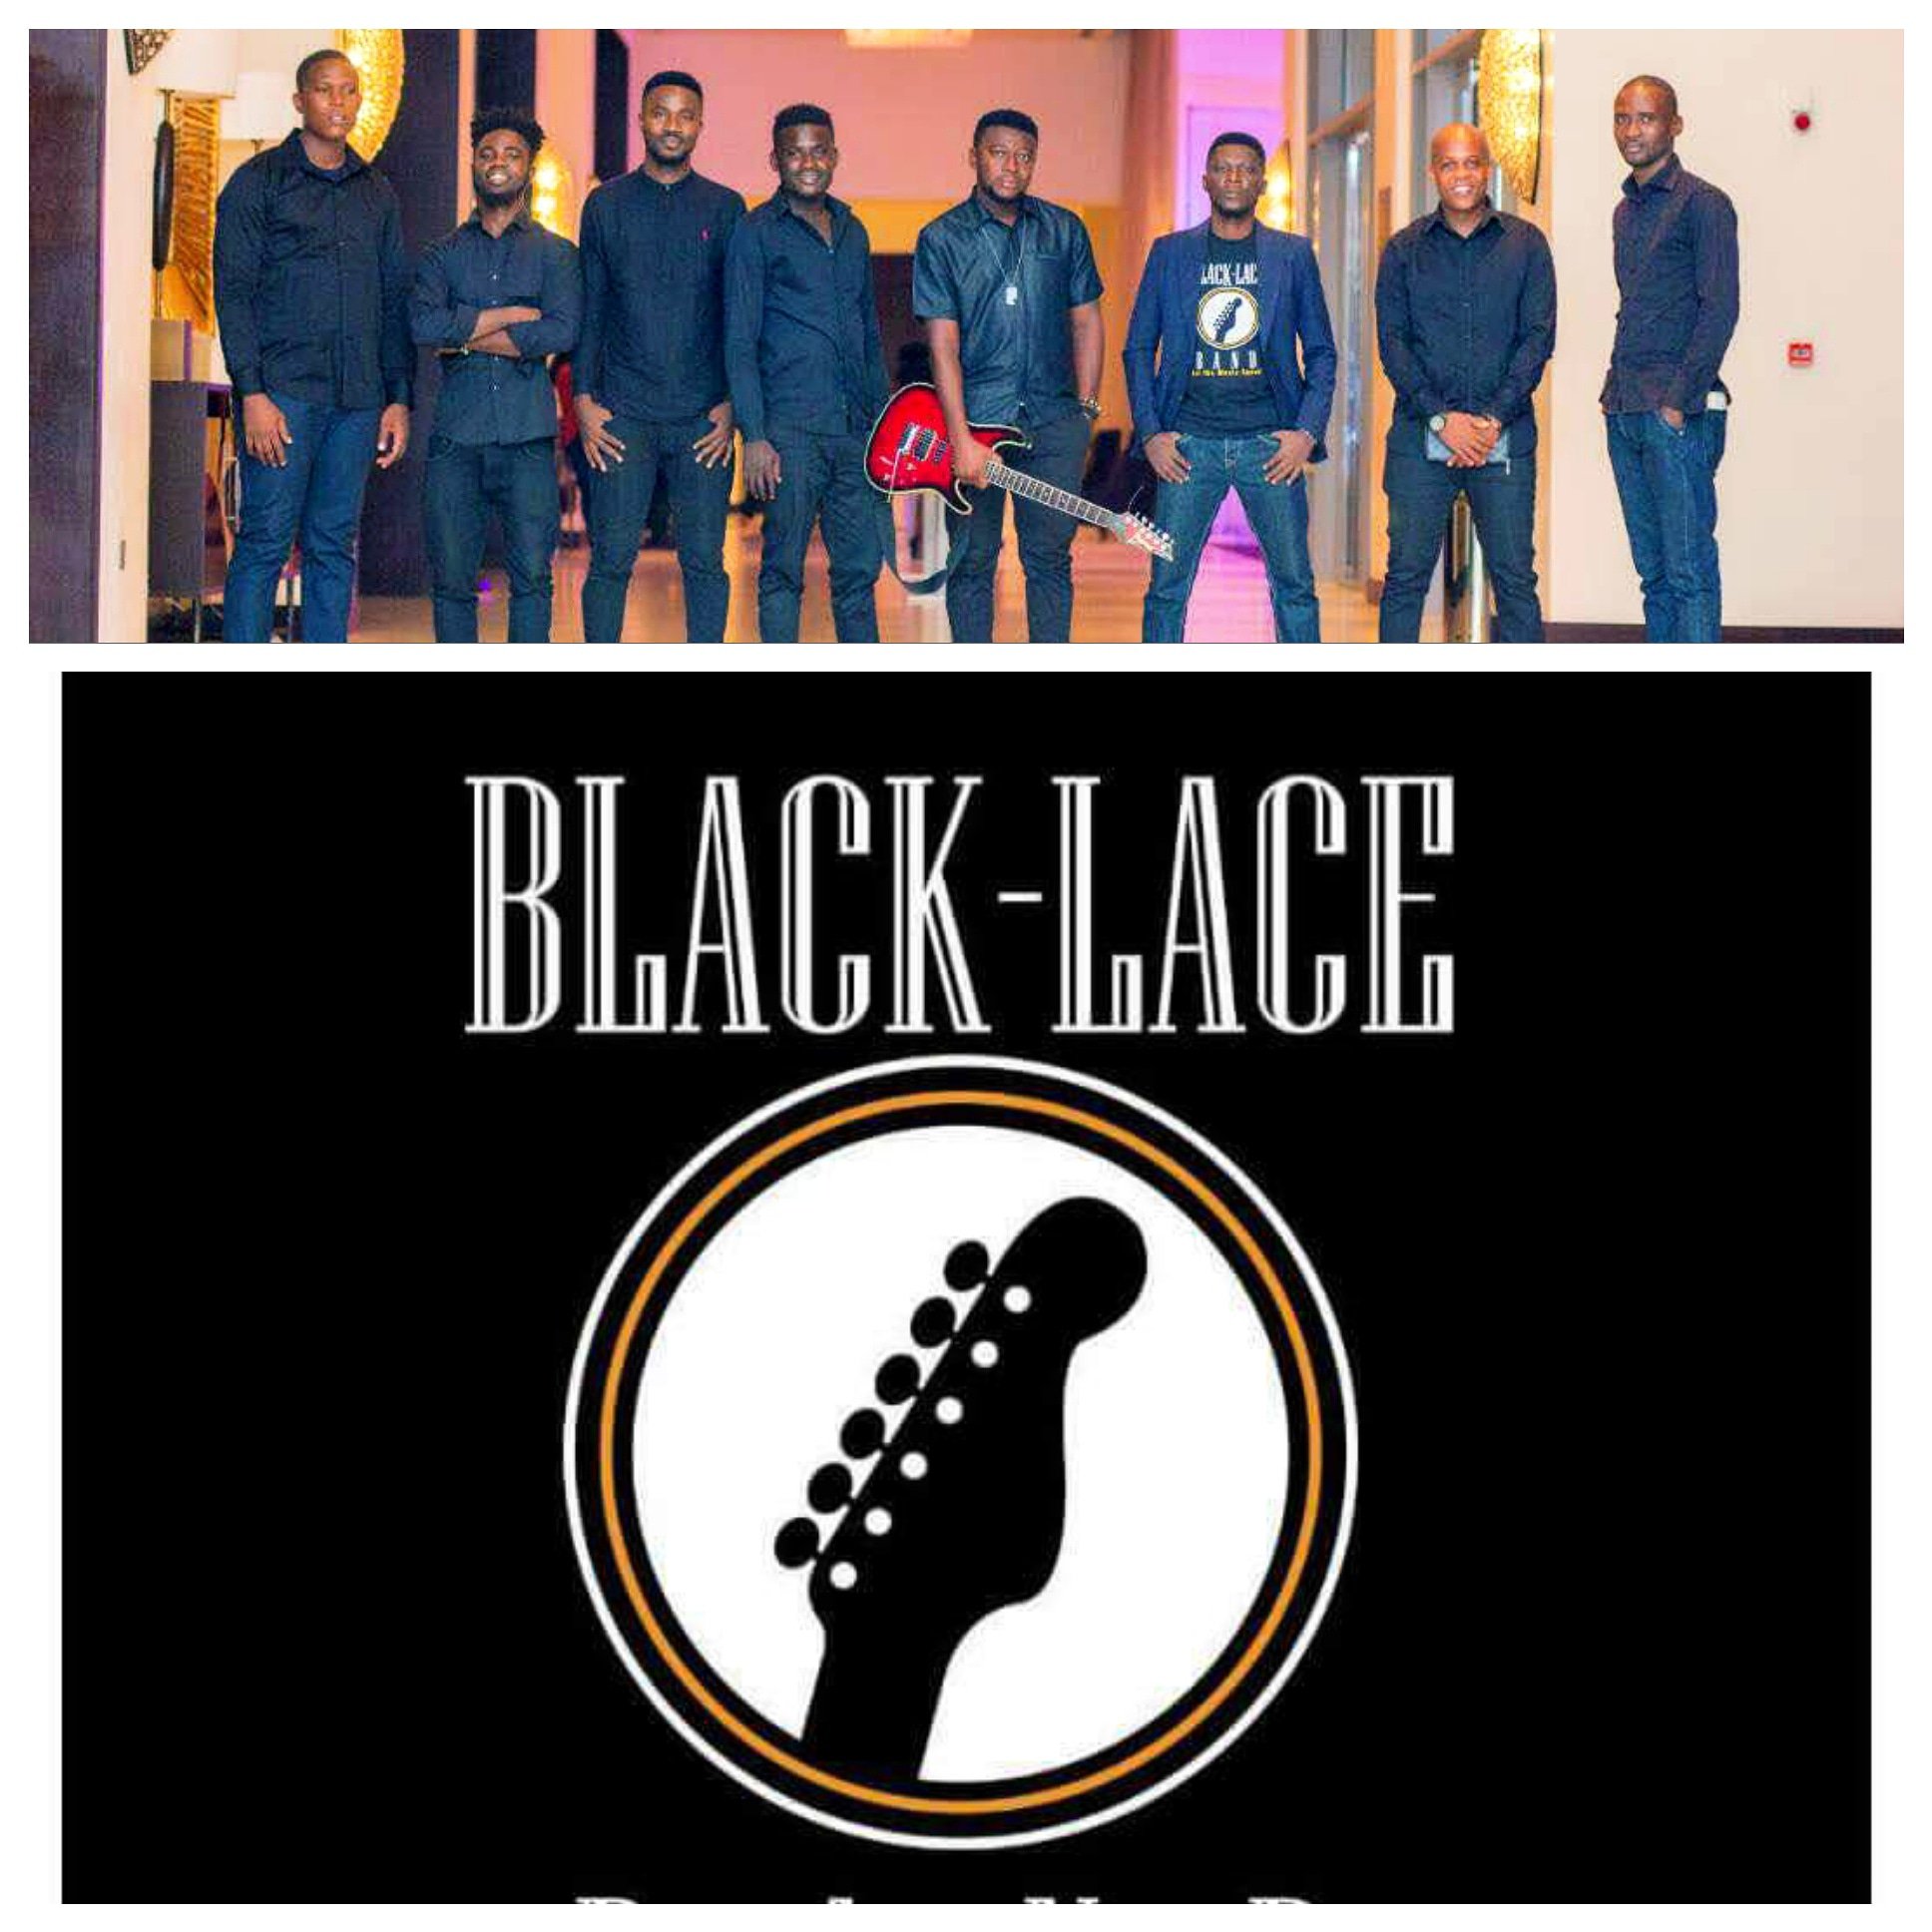 Black-Lace Band (@BlackLaceband) / X